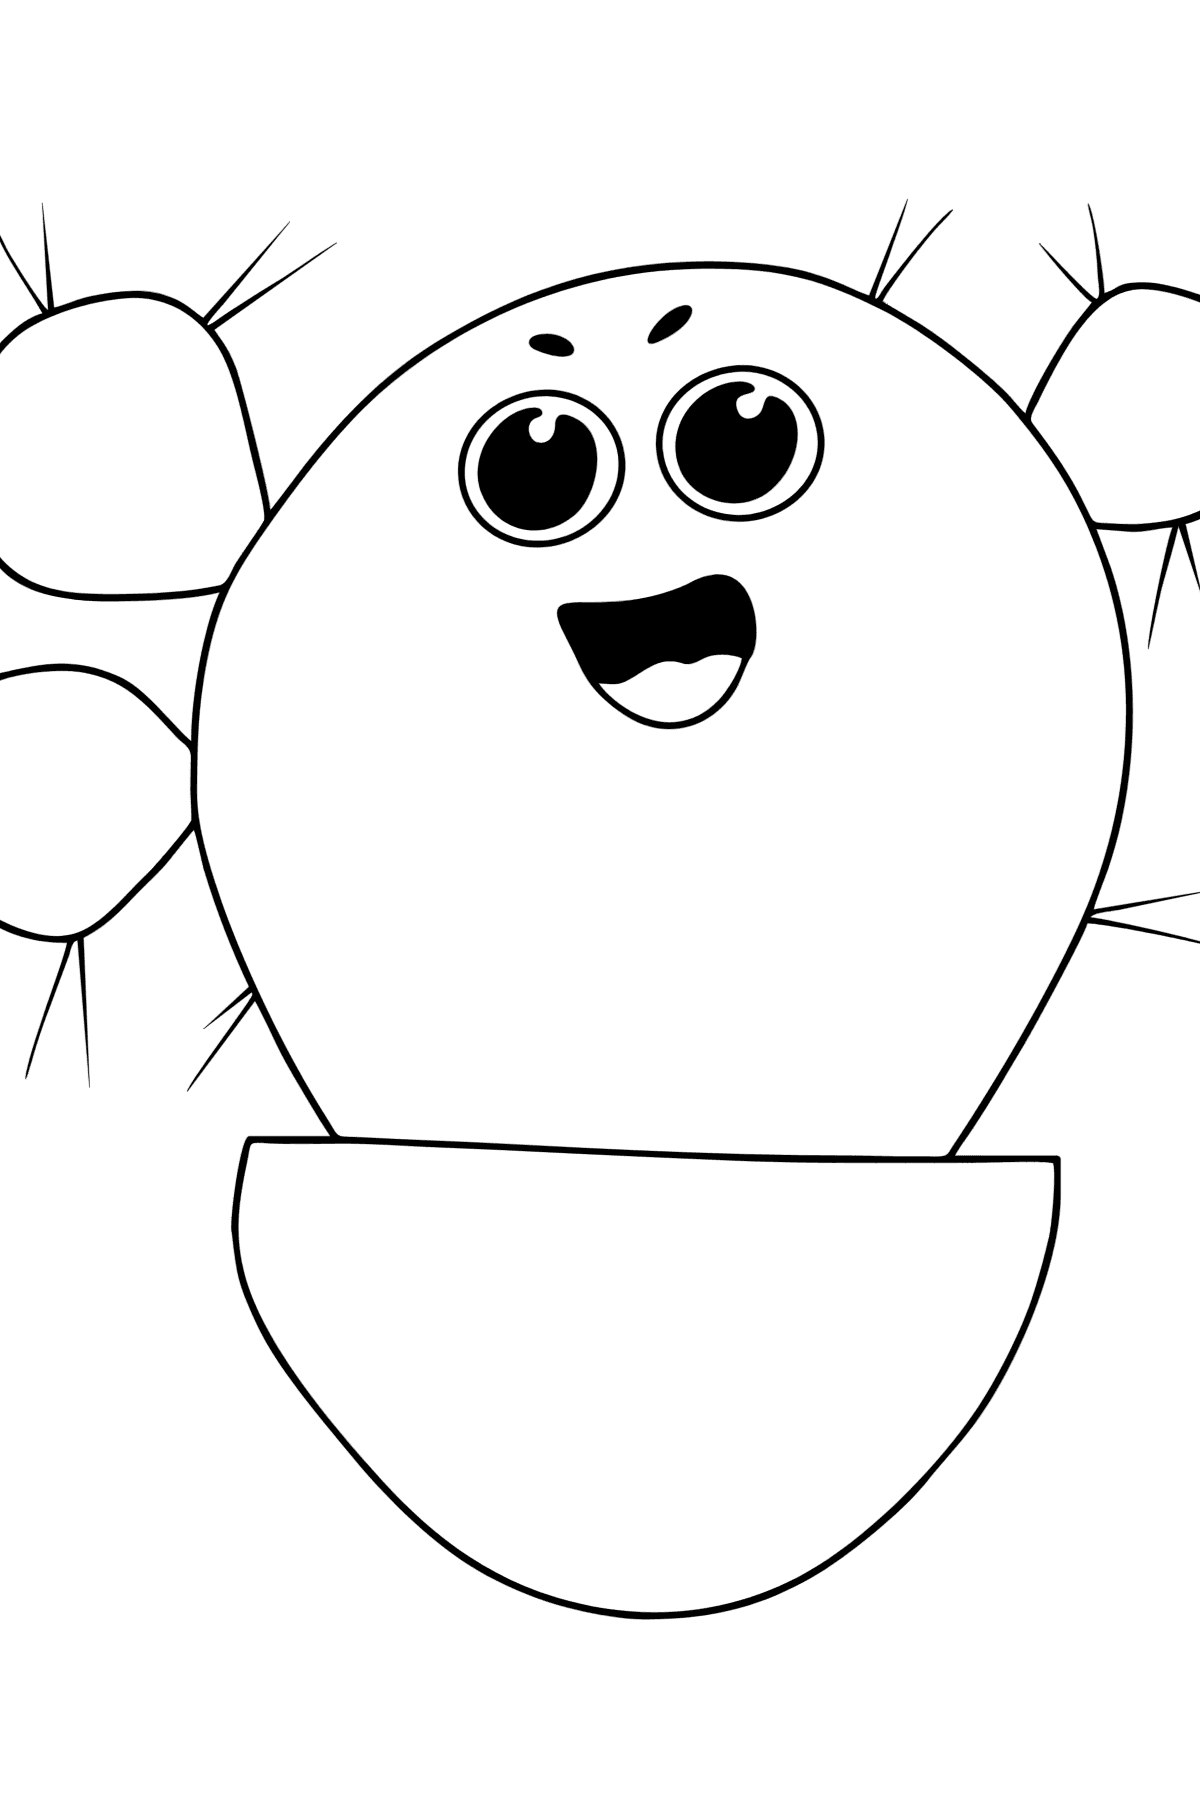 Розмальовка Кактус з очками - Розмальовки для дітей